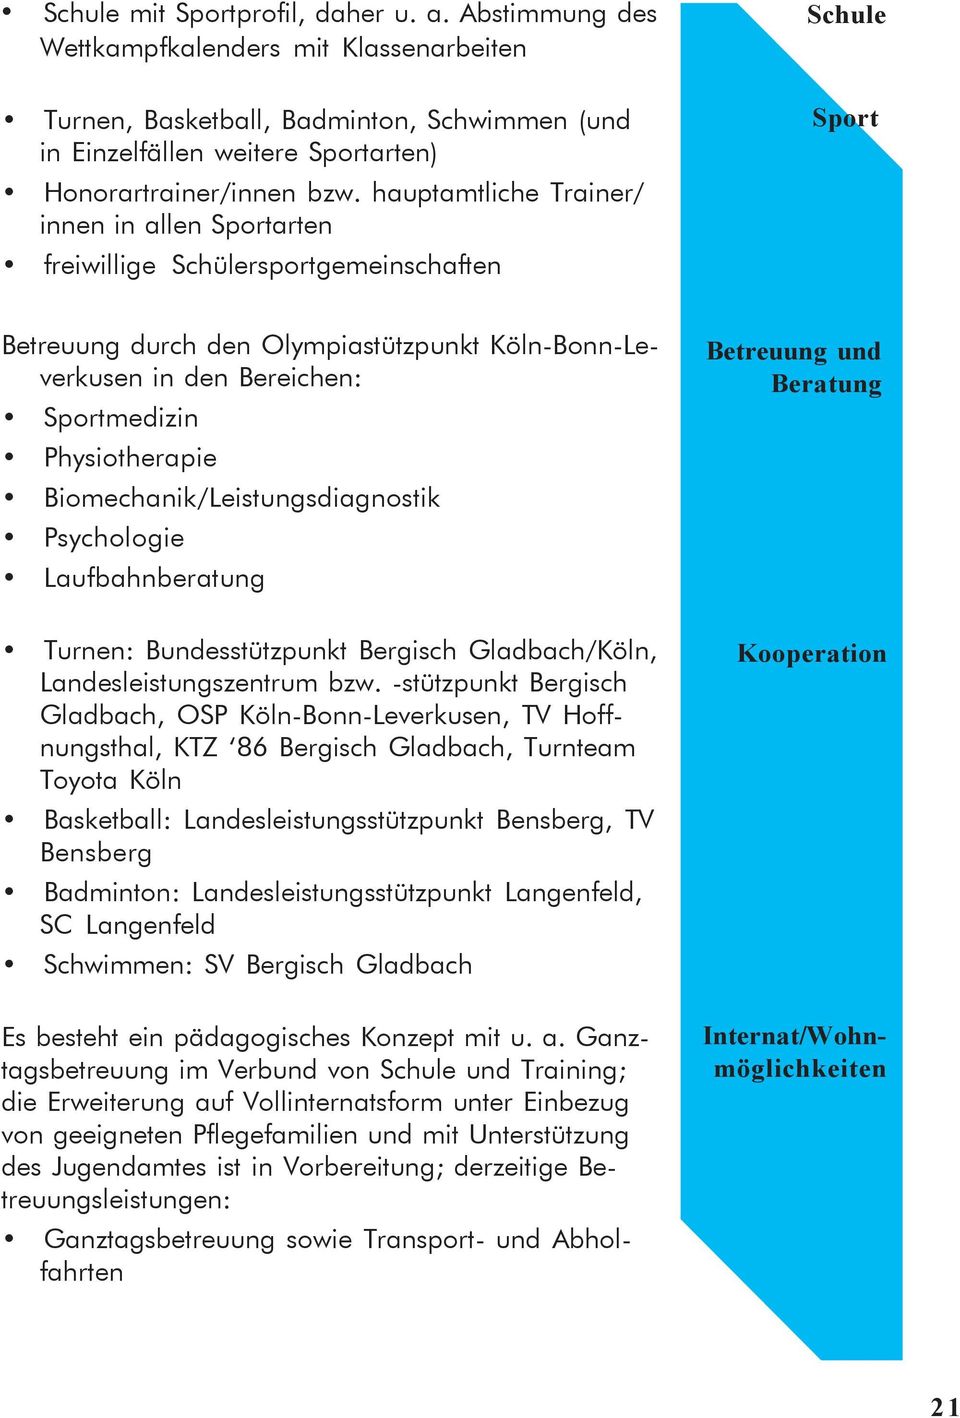 Physiotherapie Biomechanik/Leistungsdiagnostik Psychologie Laufbahnberatung Betreuung und Beratung Turnen: Bundesstützpunkt Bergisch Gladbach/Köln, Landesleistungszentrum bzw.